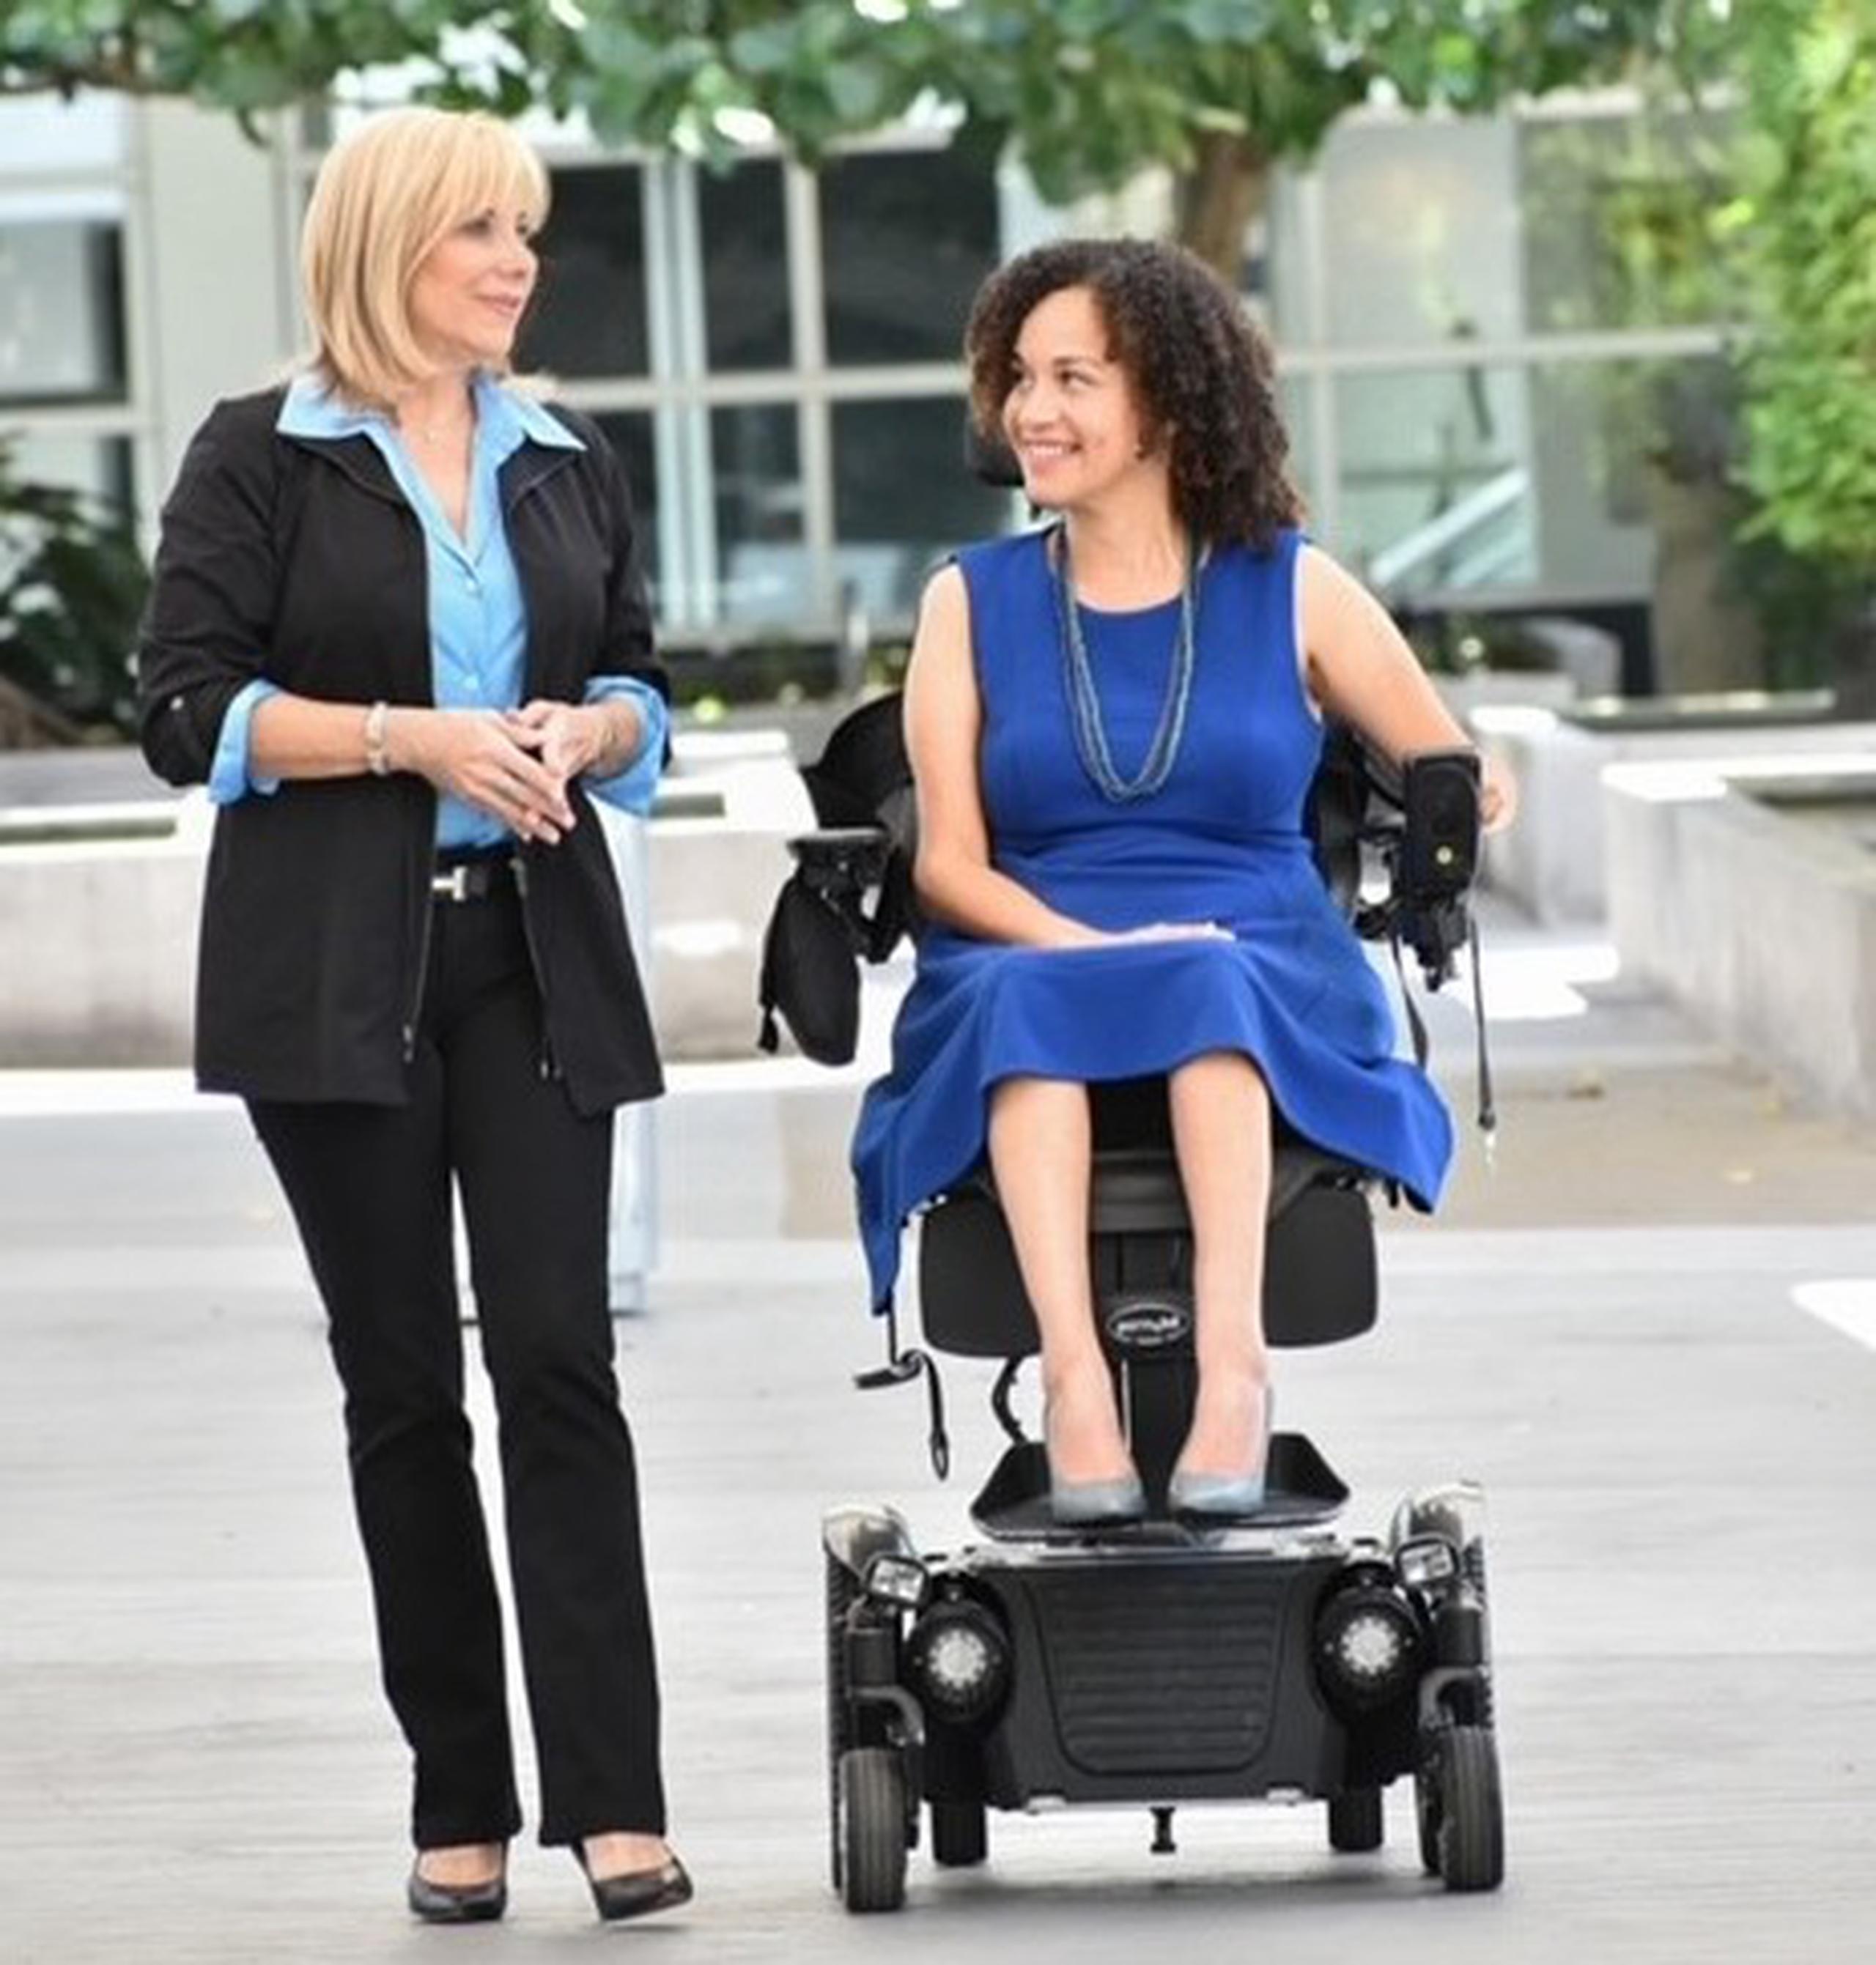 Viviane M. Fortuño, presidenta de CTI Consulting Group y María del Carmen Rodríguez- Morales, consultora en Inclusión, Accesibilidad y Discapacidad, se unen para lograr empresas inclusivas en Puerto Rico.